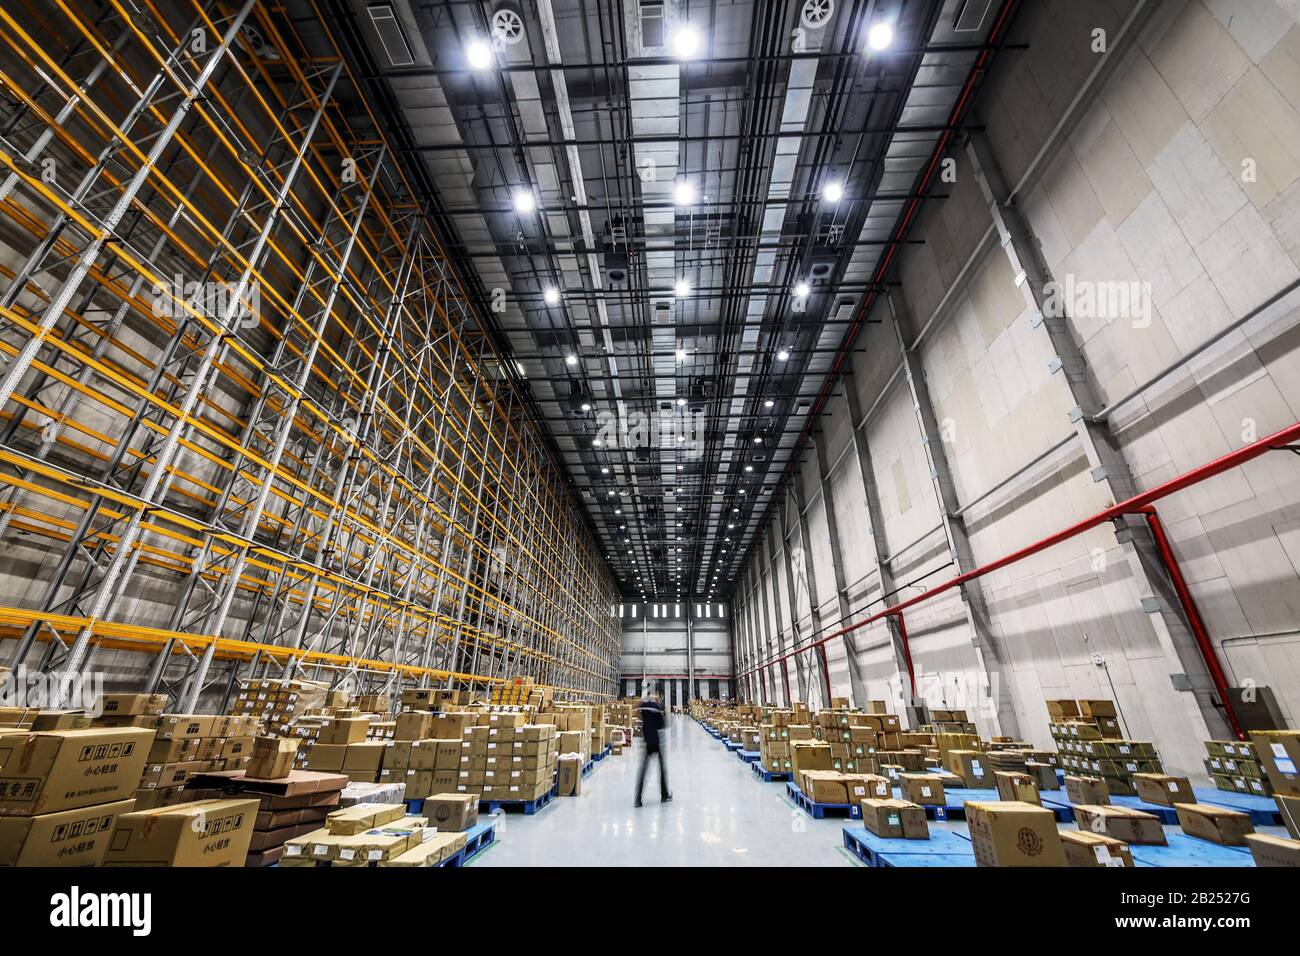 Peking, CHINA - 03. JUNI 2019: Moderne Automatisierung der Lagerproduktion in China. Stockfoto